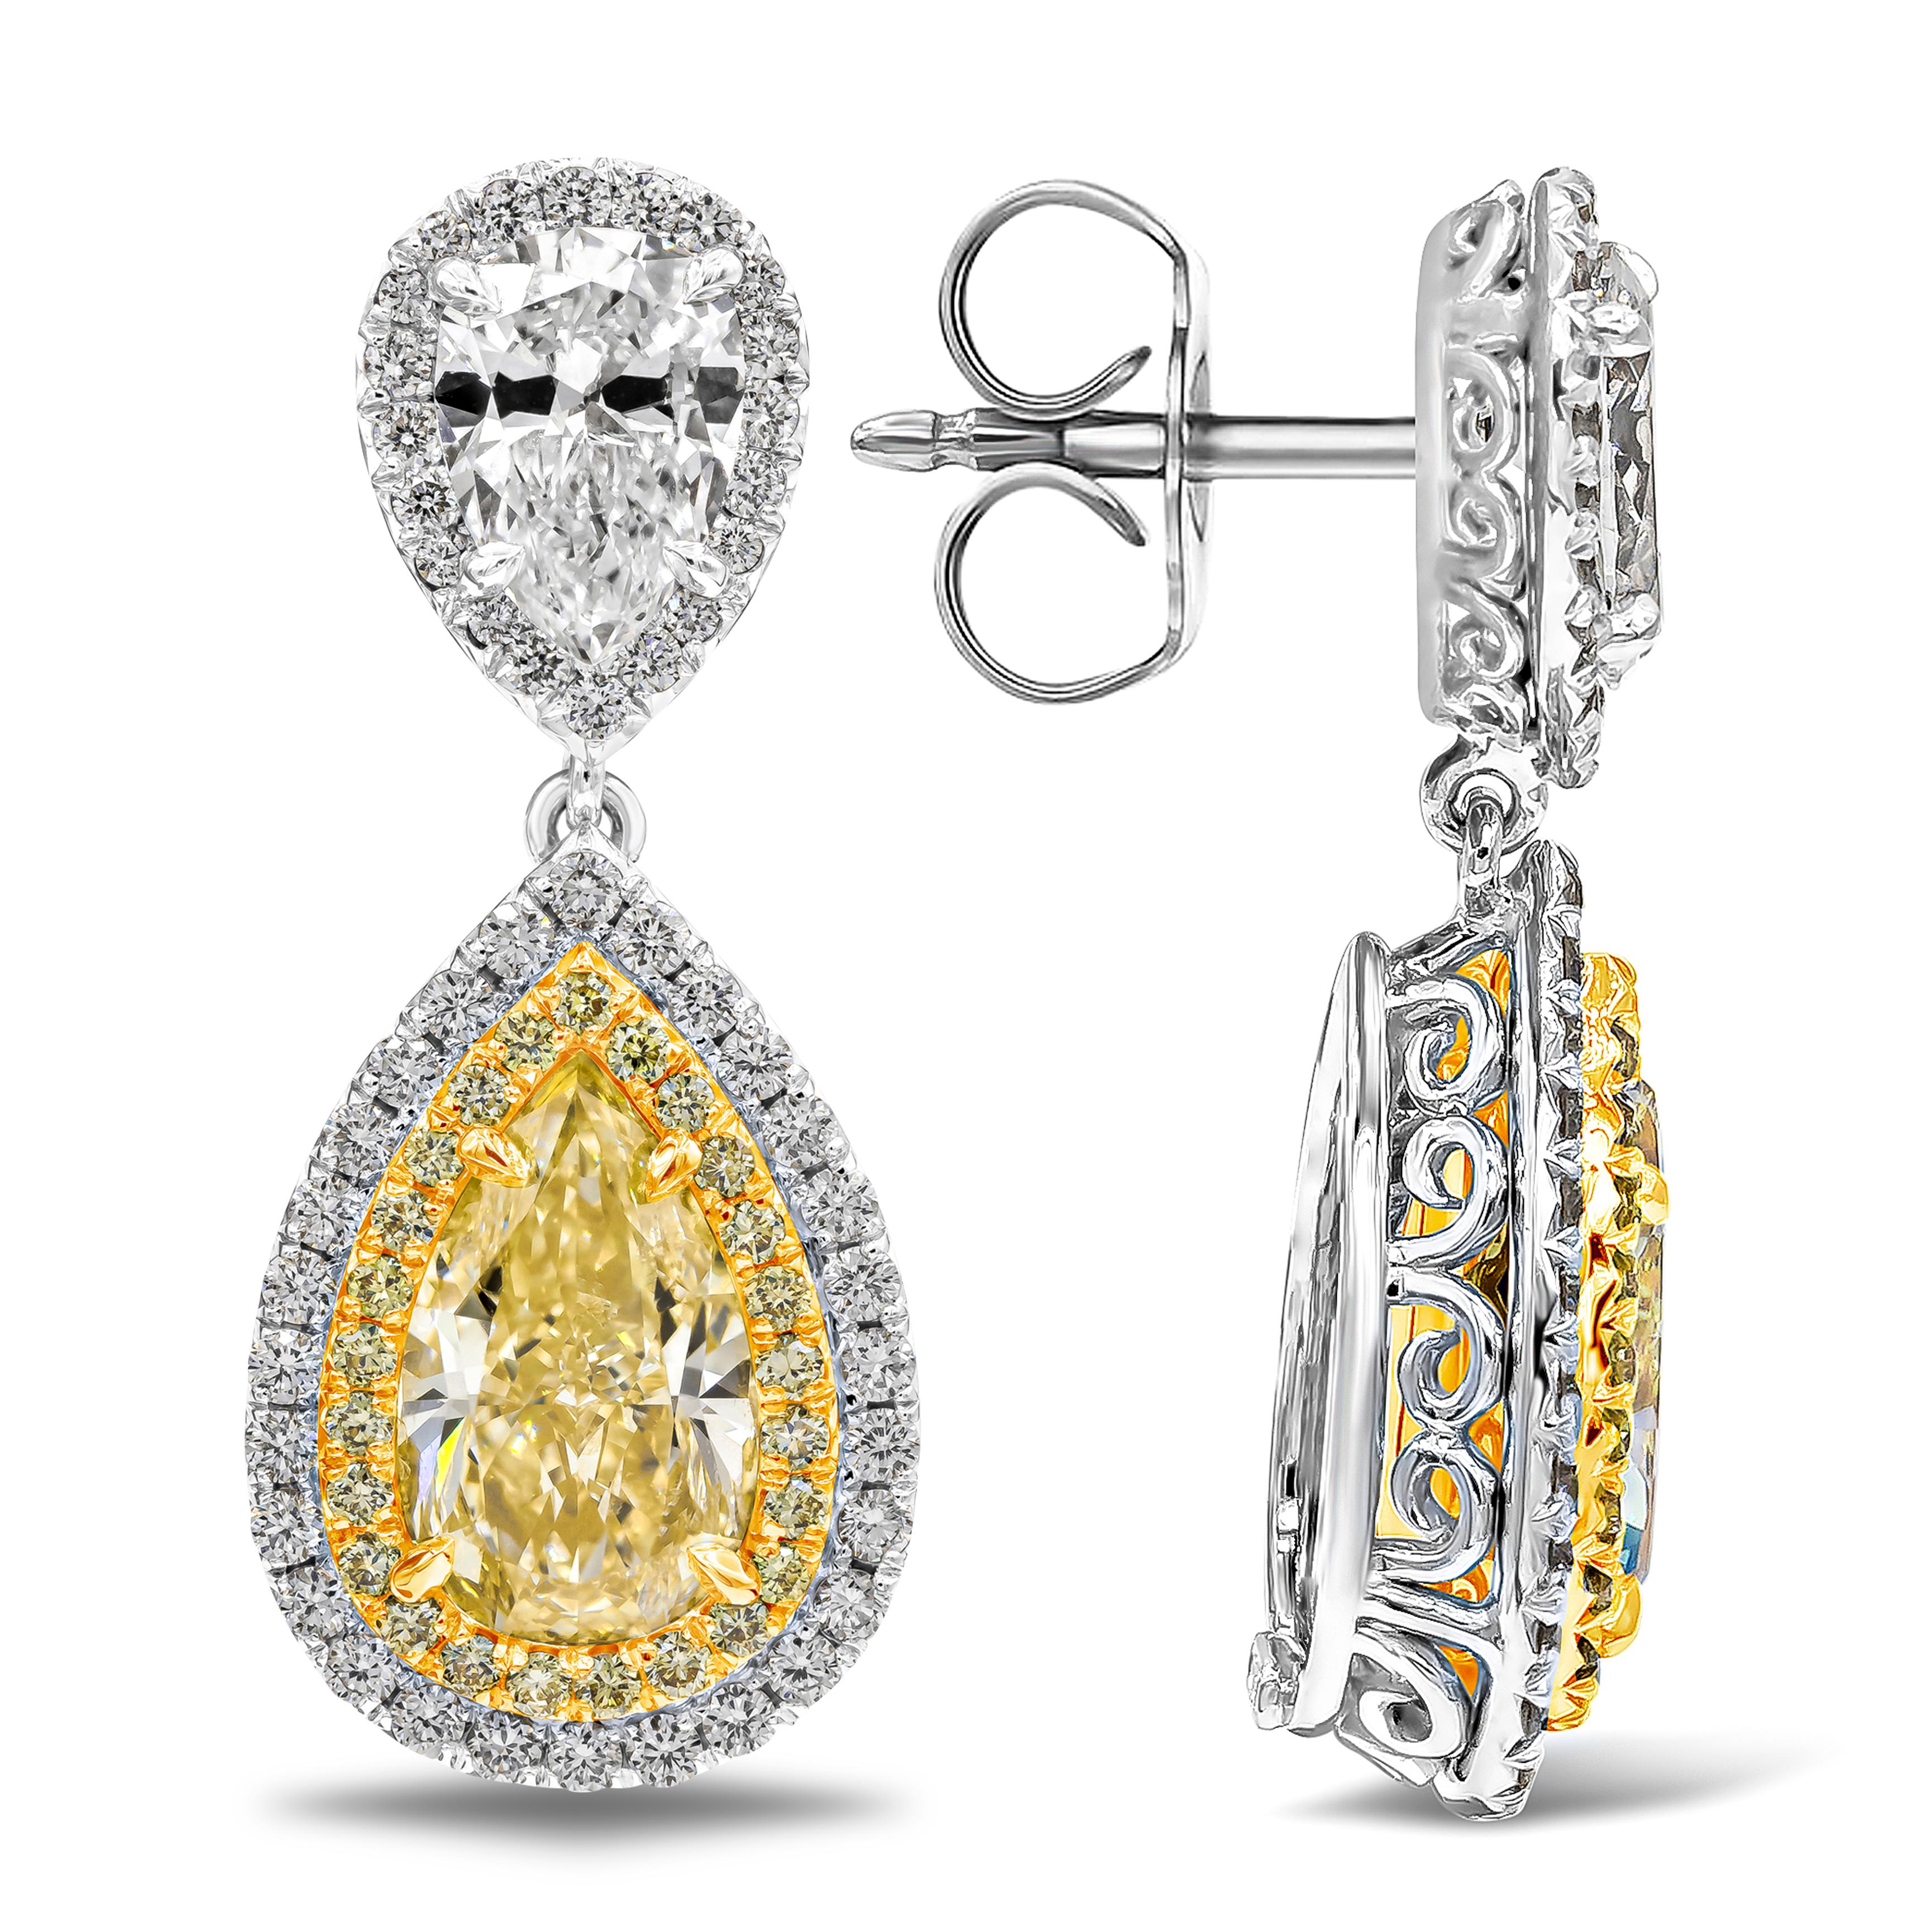 Zwei birnenförmige gelbe Diamanten mit einem Gewicht von ca. 2,13 und 2,06 Karat, umgeben von zwei Reihen runder Brillanten in einem Halo-Design, bilden einen farbenfrohen und eleganten Blickfang. Aufgehängt an einem weißen Diamanten in Birnenform,